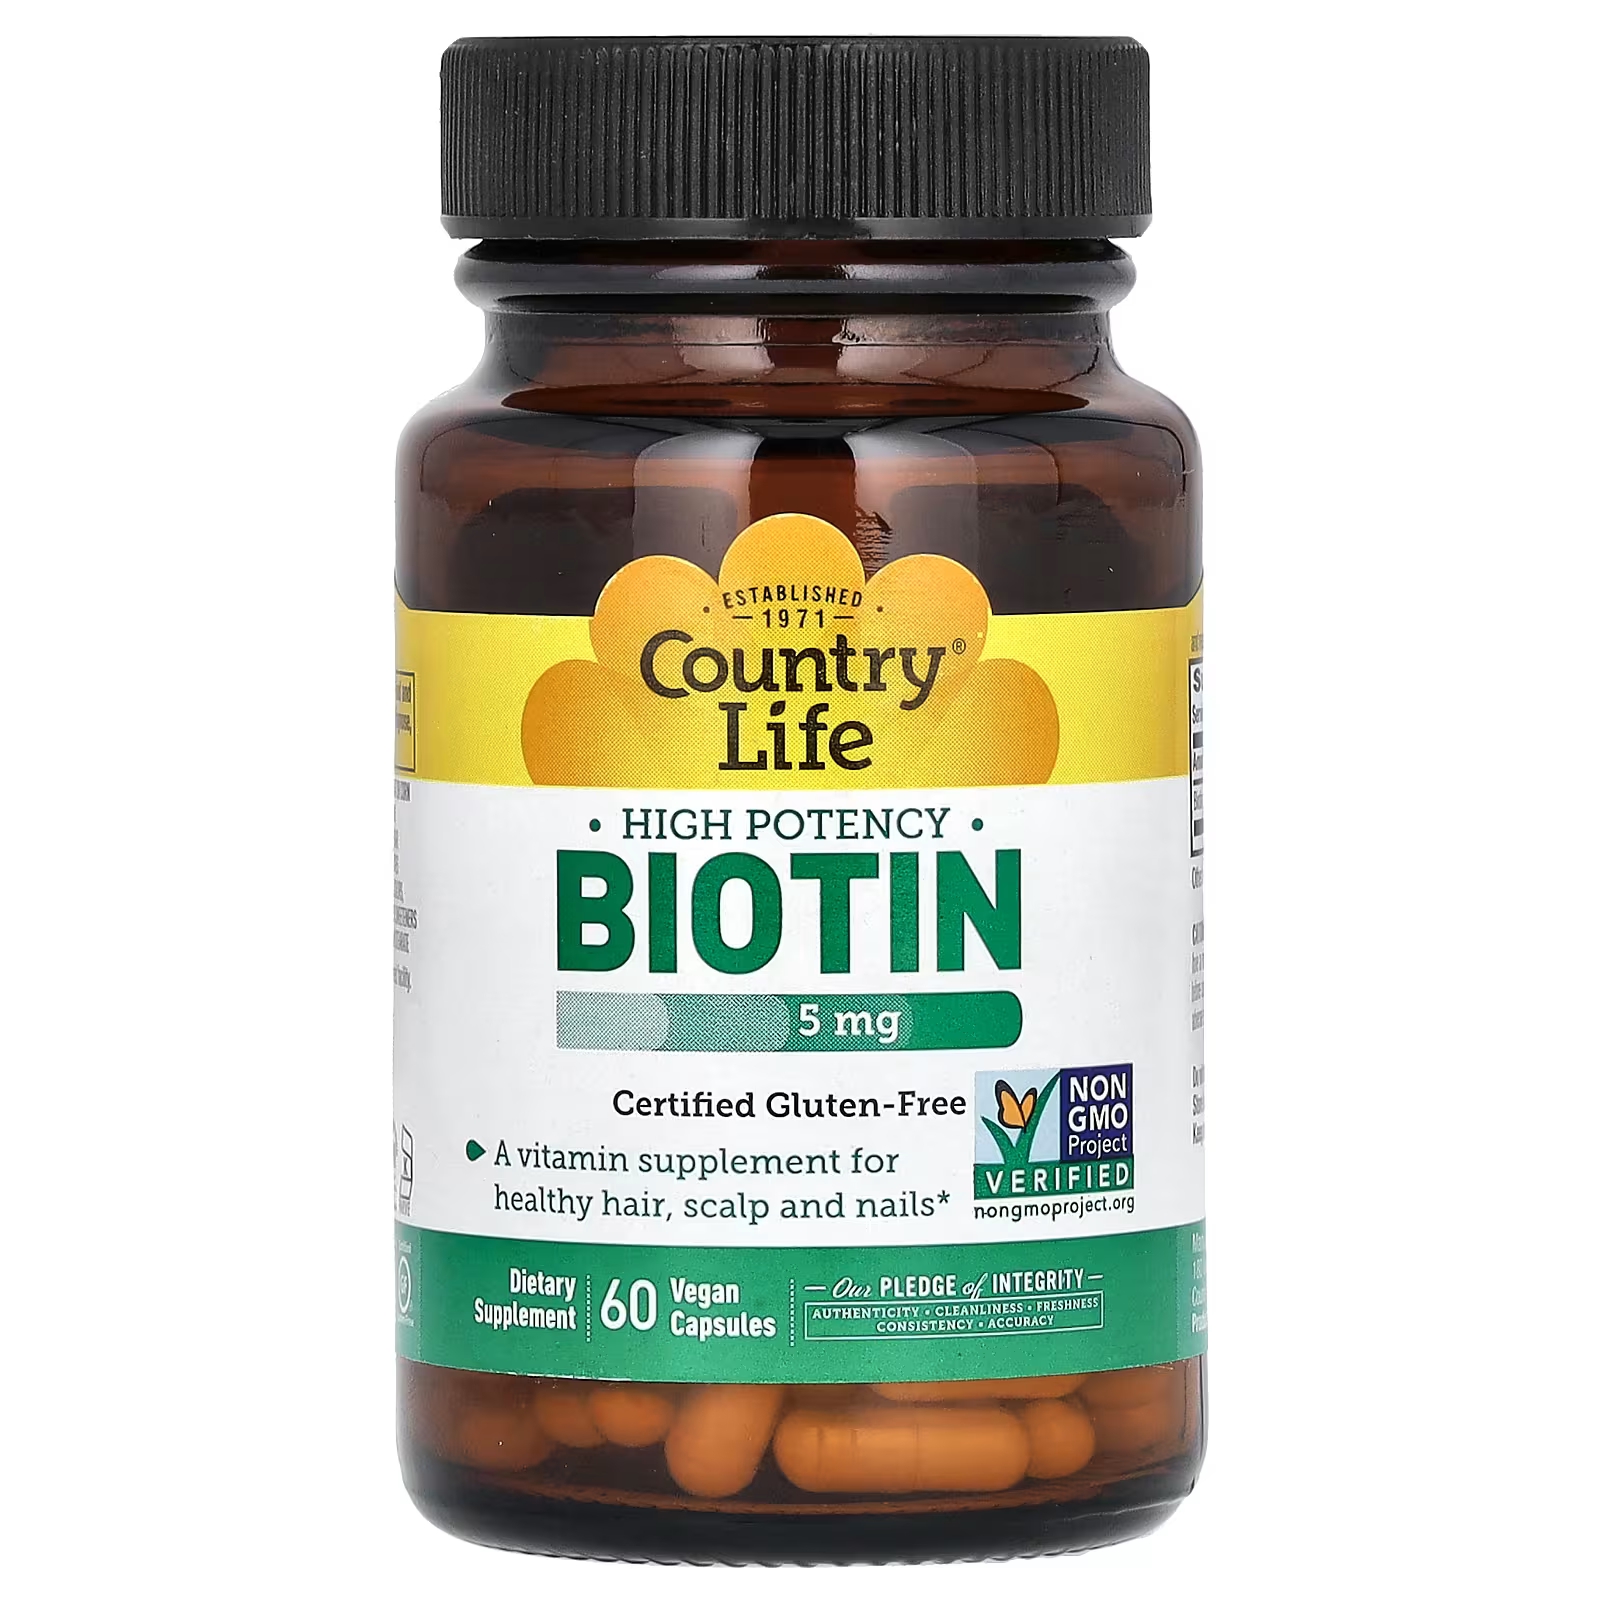 Биотин высокой эффективности Country Life 5 мг, 60 веганских капсул фитофангер для истончения волос и ногтей пищевая добавка 120 таблеток phyto